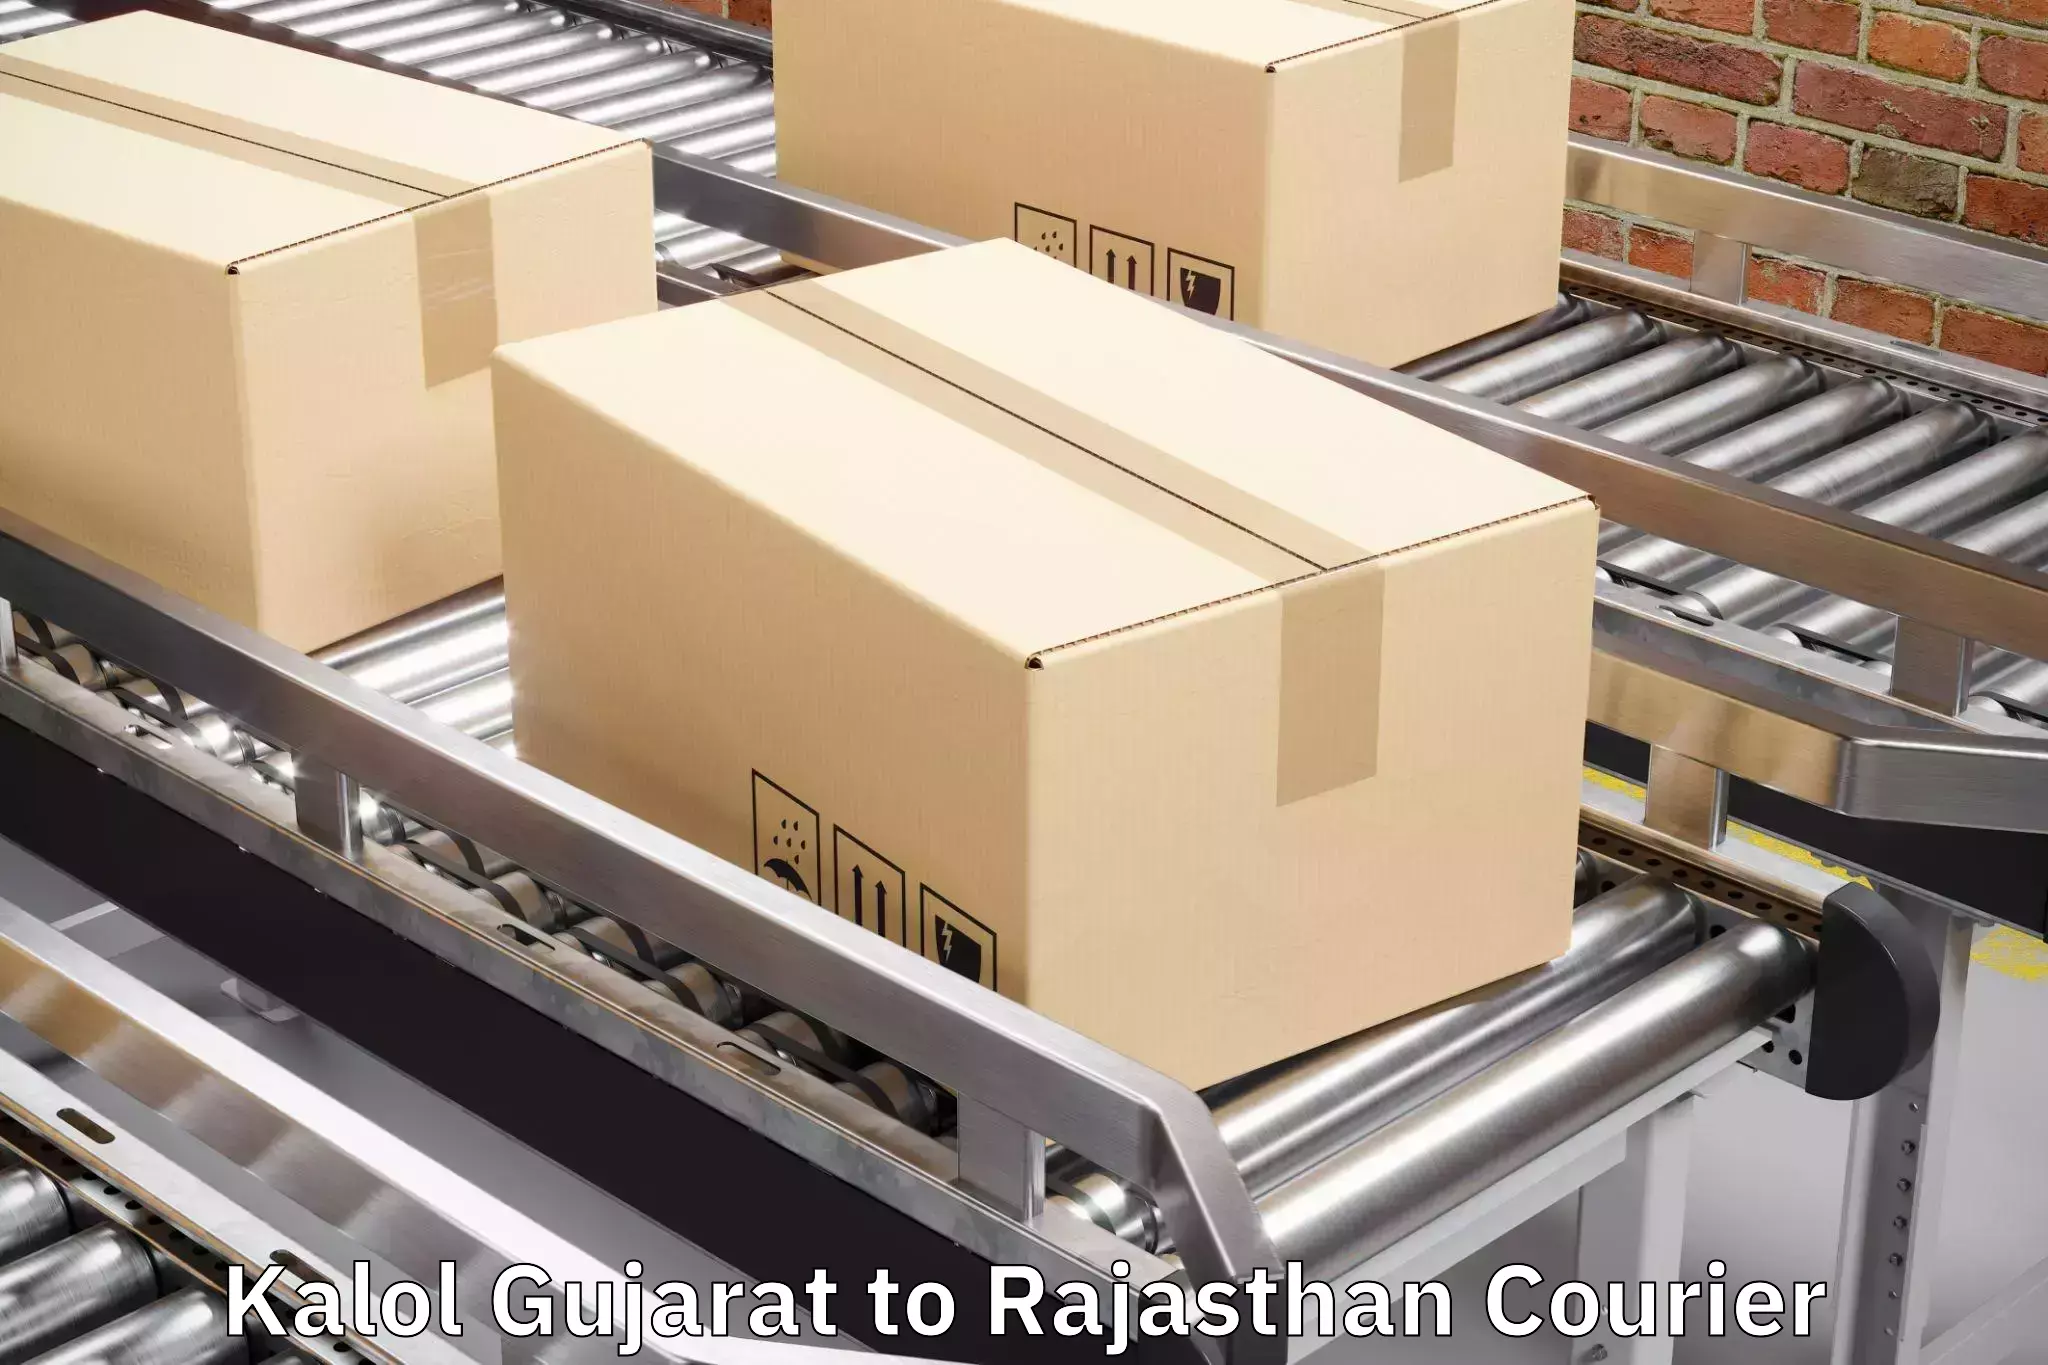 Luggage transport deals Kalol Gujarat to Rajgarh Rajasthan